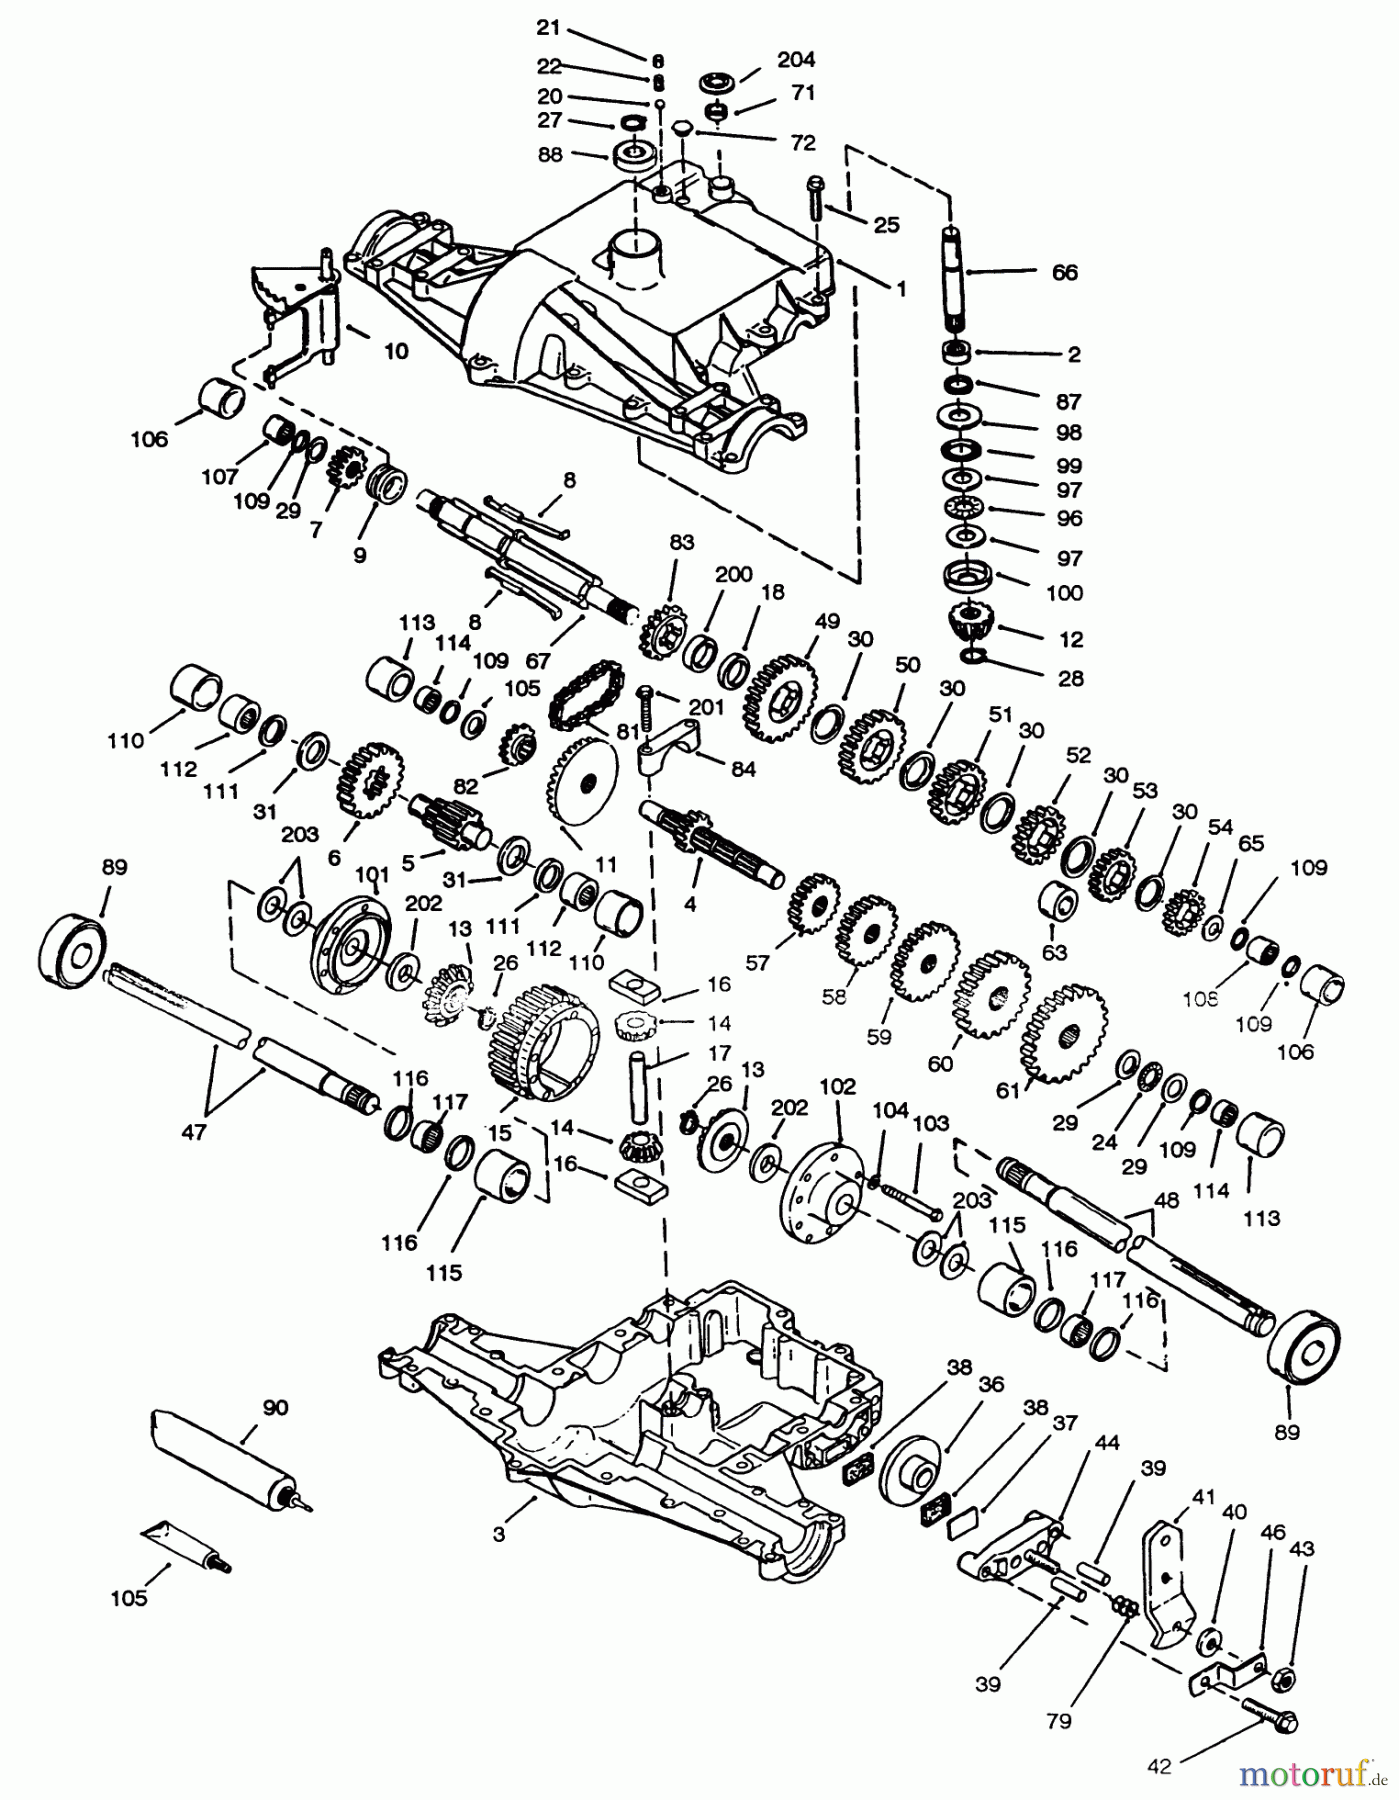  Toro Neu Mowers, Lawn & Garden Tractor Seite 1 72103 (268-H) - Toro 268-H Yard Tractor, 1994 (4900001-4999999) PEERLESS TRANSAXLE 820-024